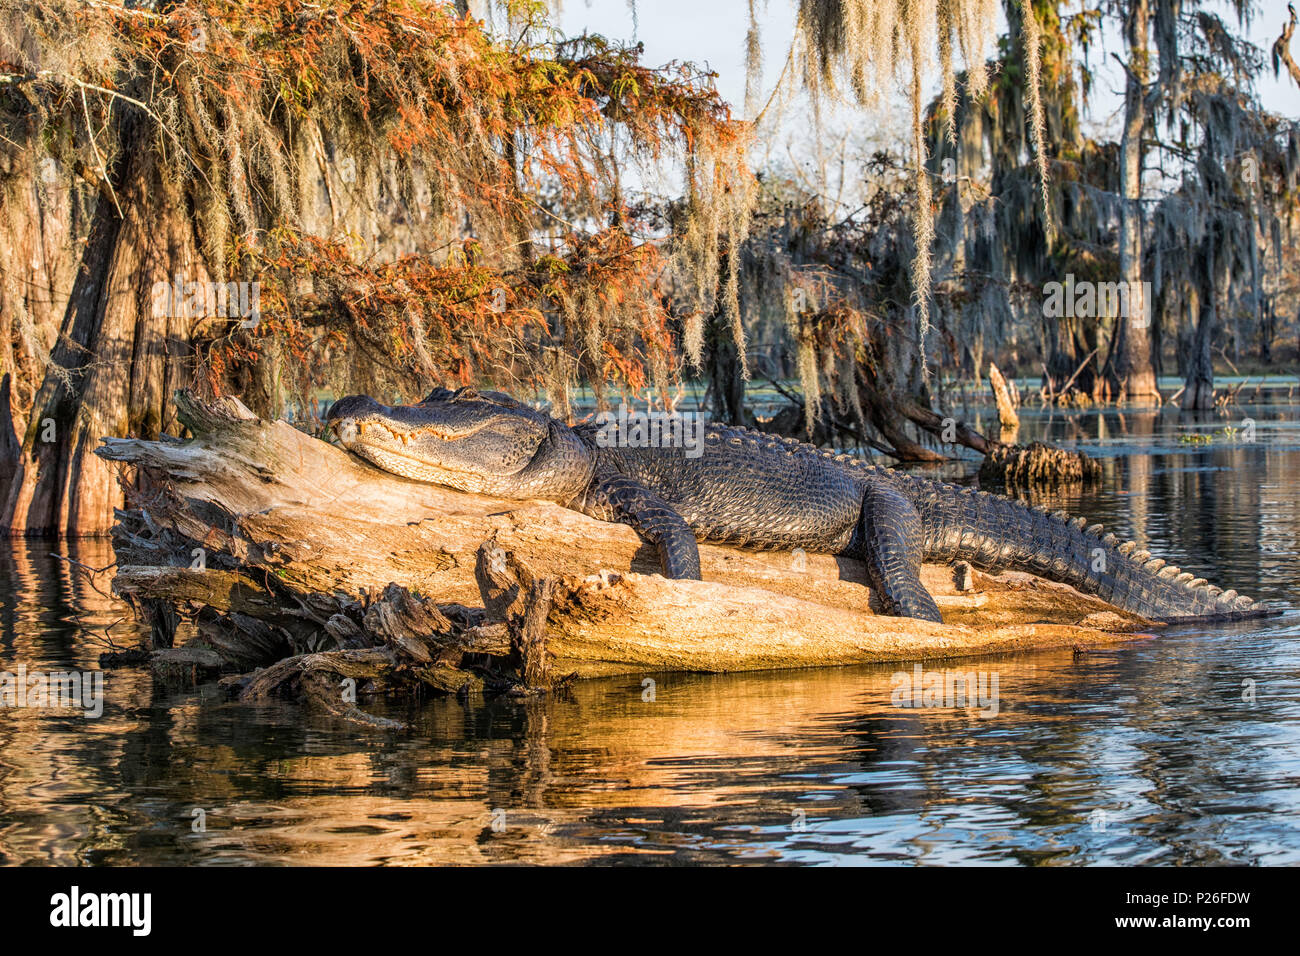 Alligator Alligator mississippiensis), (Lac Martin, Breaux Bridge, bassin Atchafalaya, Sud des États-Unis, ÉTATS UNIS, Amérique du Nord Banque D'Images